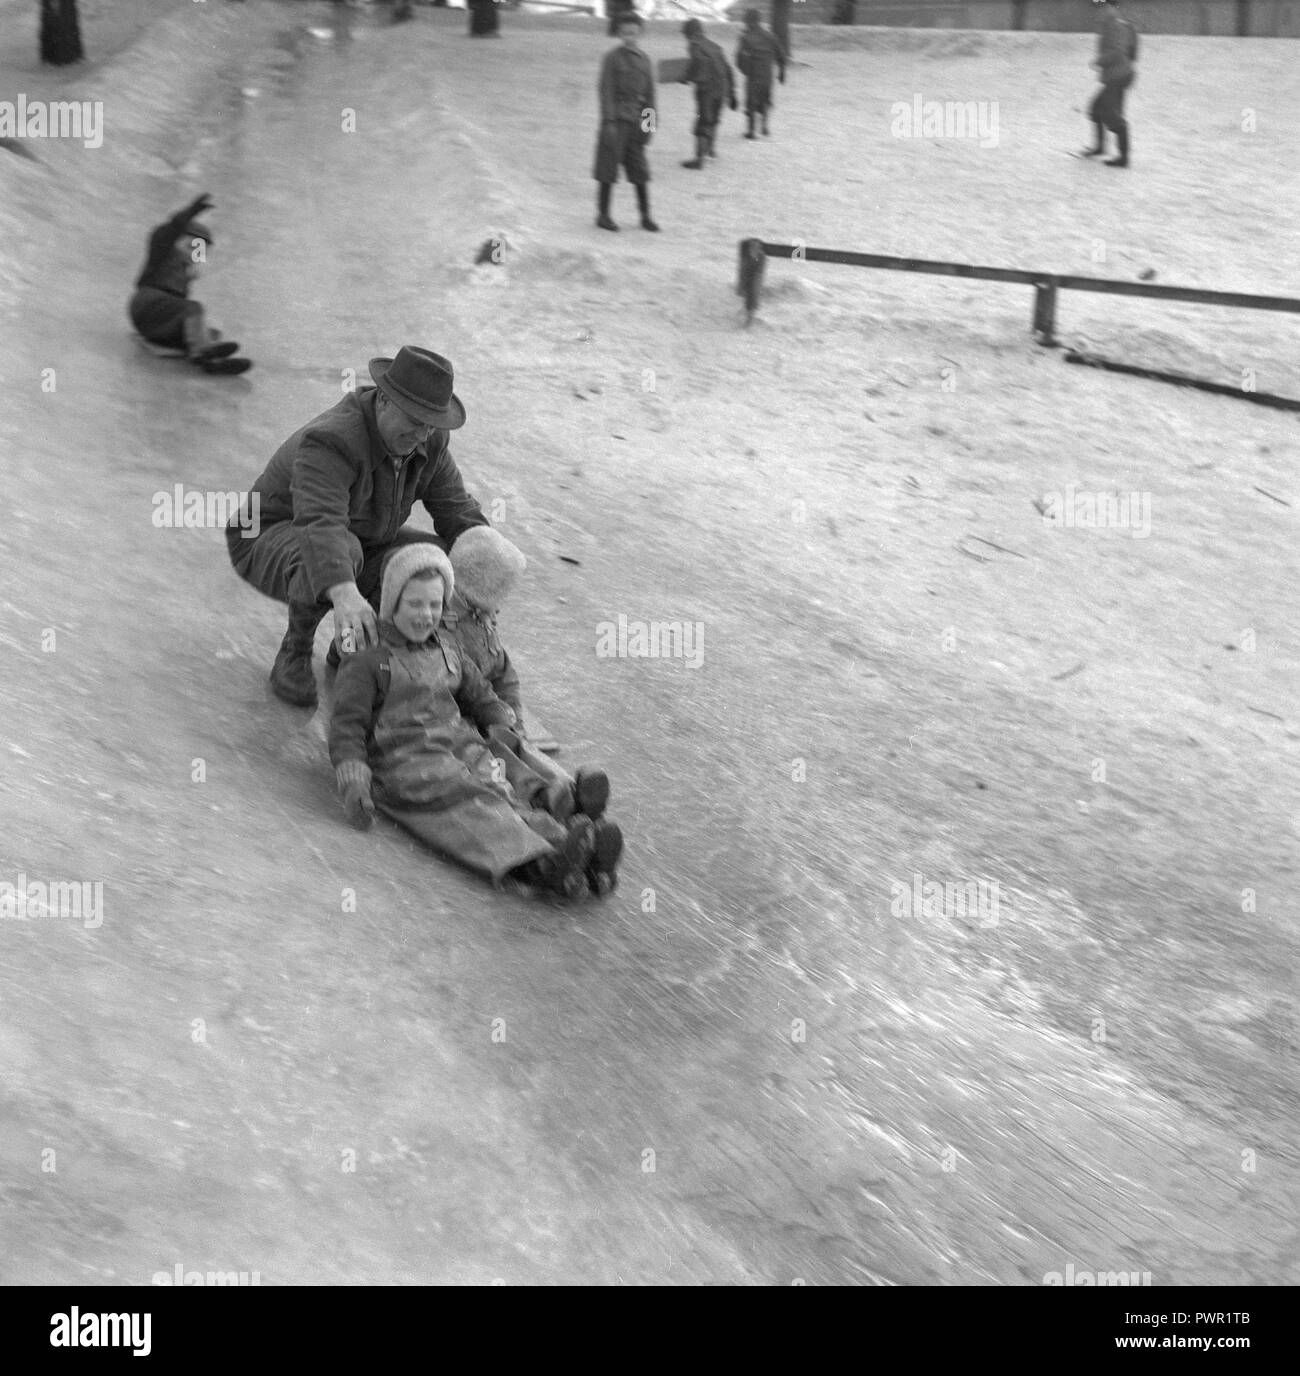 L'hiver dans les années 1950. Des enfants jouent dans un parc à Stockholm. Le glisser sur la colline glacée ensemble et avoir du plaisir. Même un homme adulte est dans le jeu. Suède 1951. Ref 1609 Banque D'Images